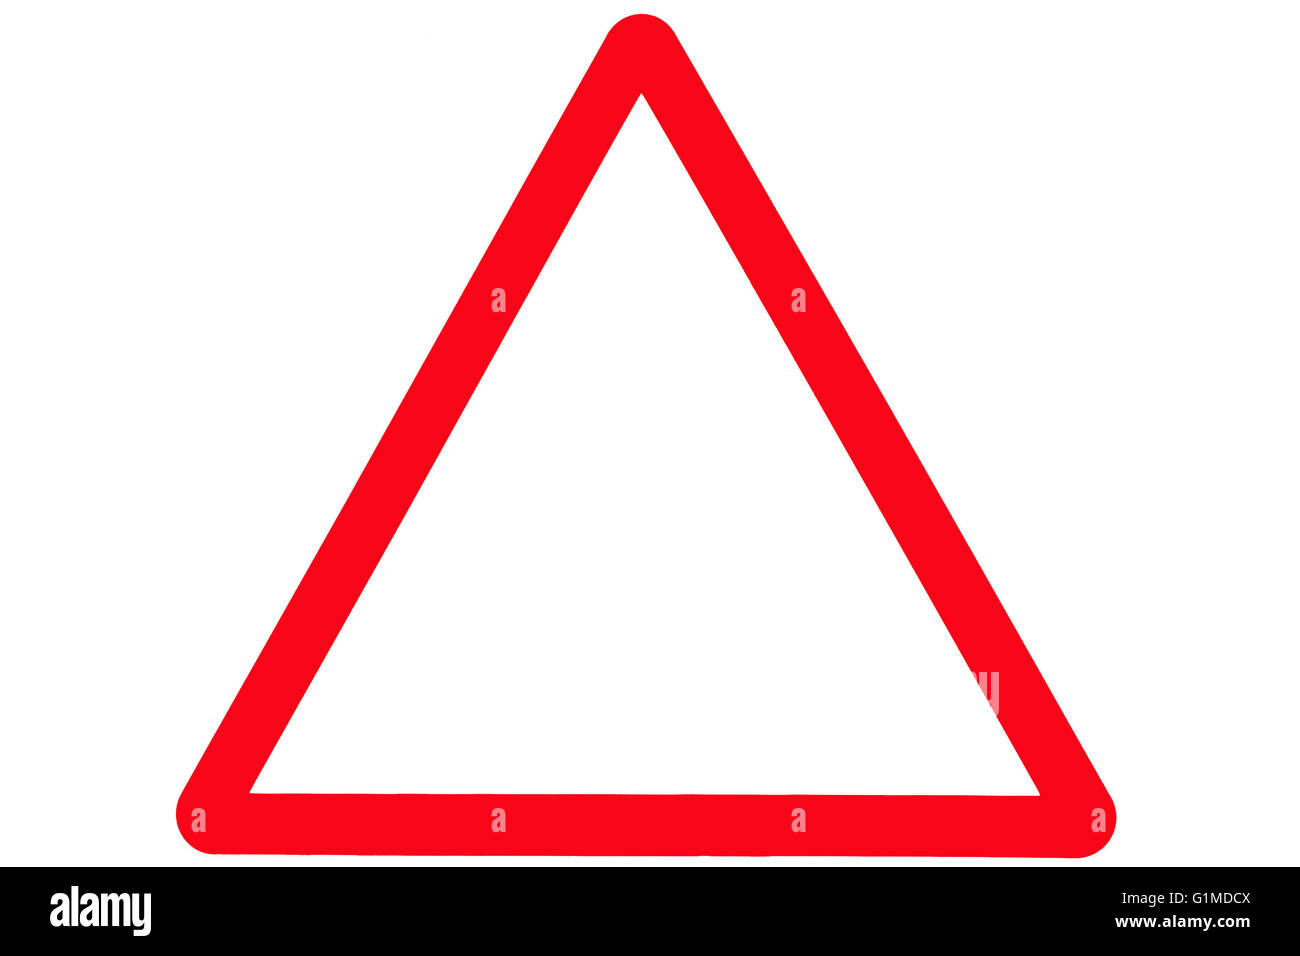 Ein leeres Dreieck oder dreieckige Straße oder Straßenschild mit einem roten Rand. Stockfoto